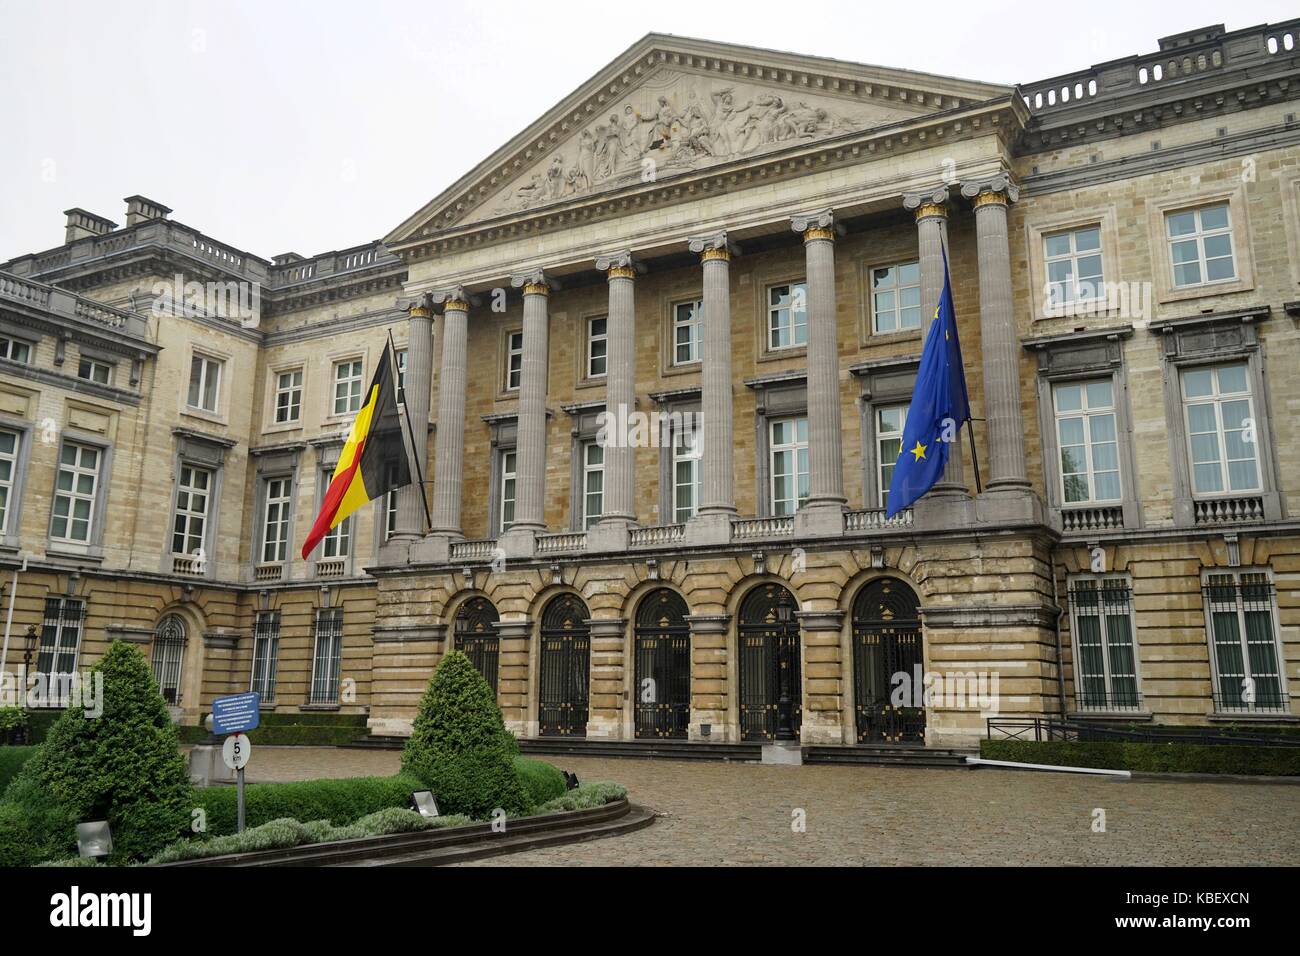 Belgien: Palast der Nation, Brüssel. Foto von 12. August 2017. Weltweit verwendet Stockfoto